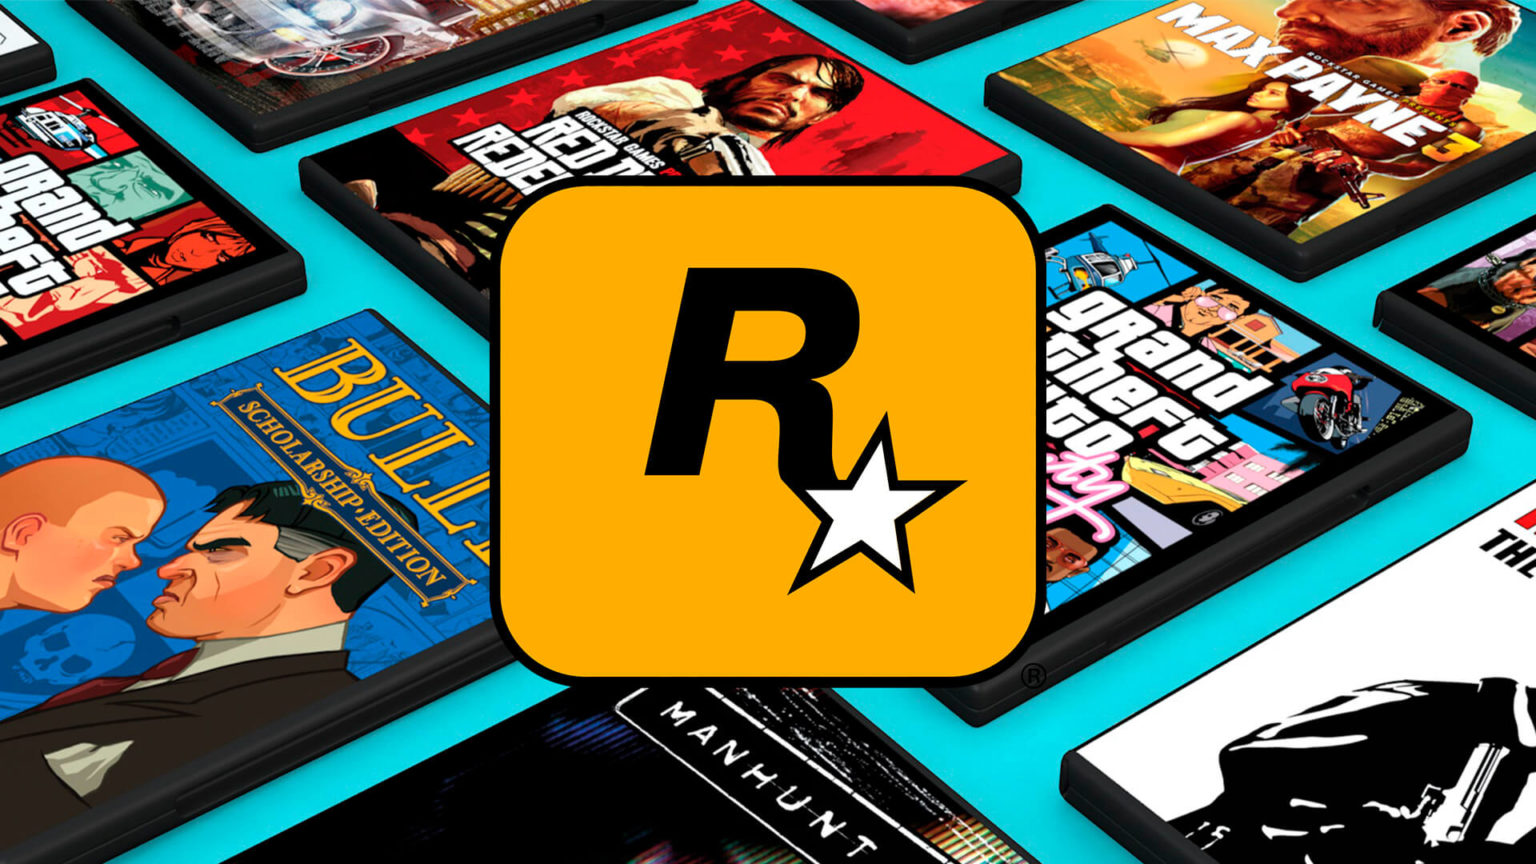 Rockstar pubblica i suoi giochi piratati su Steam, attivando le protezioni antipirateria